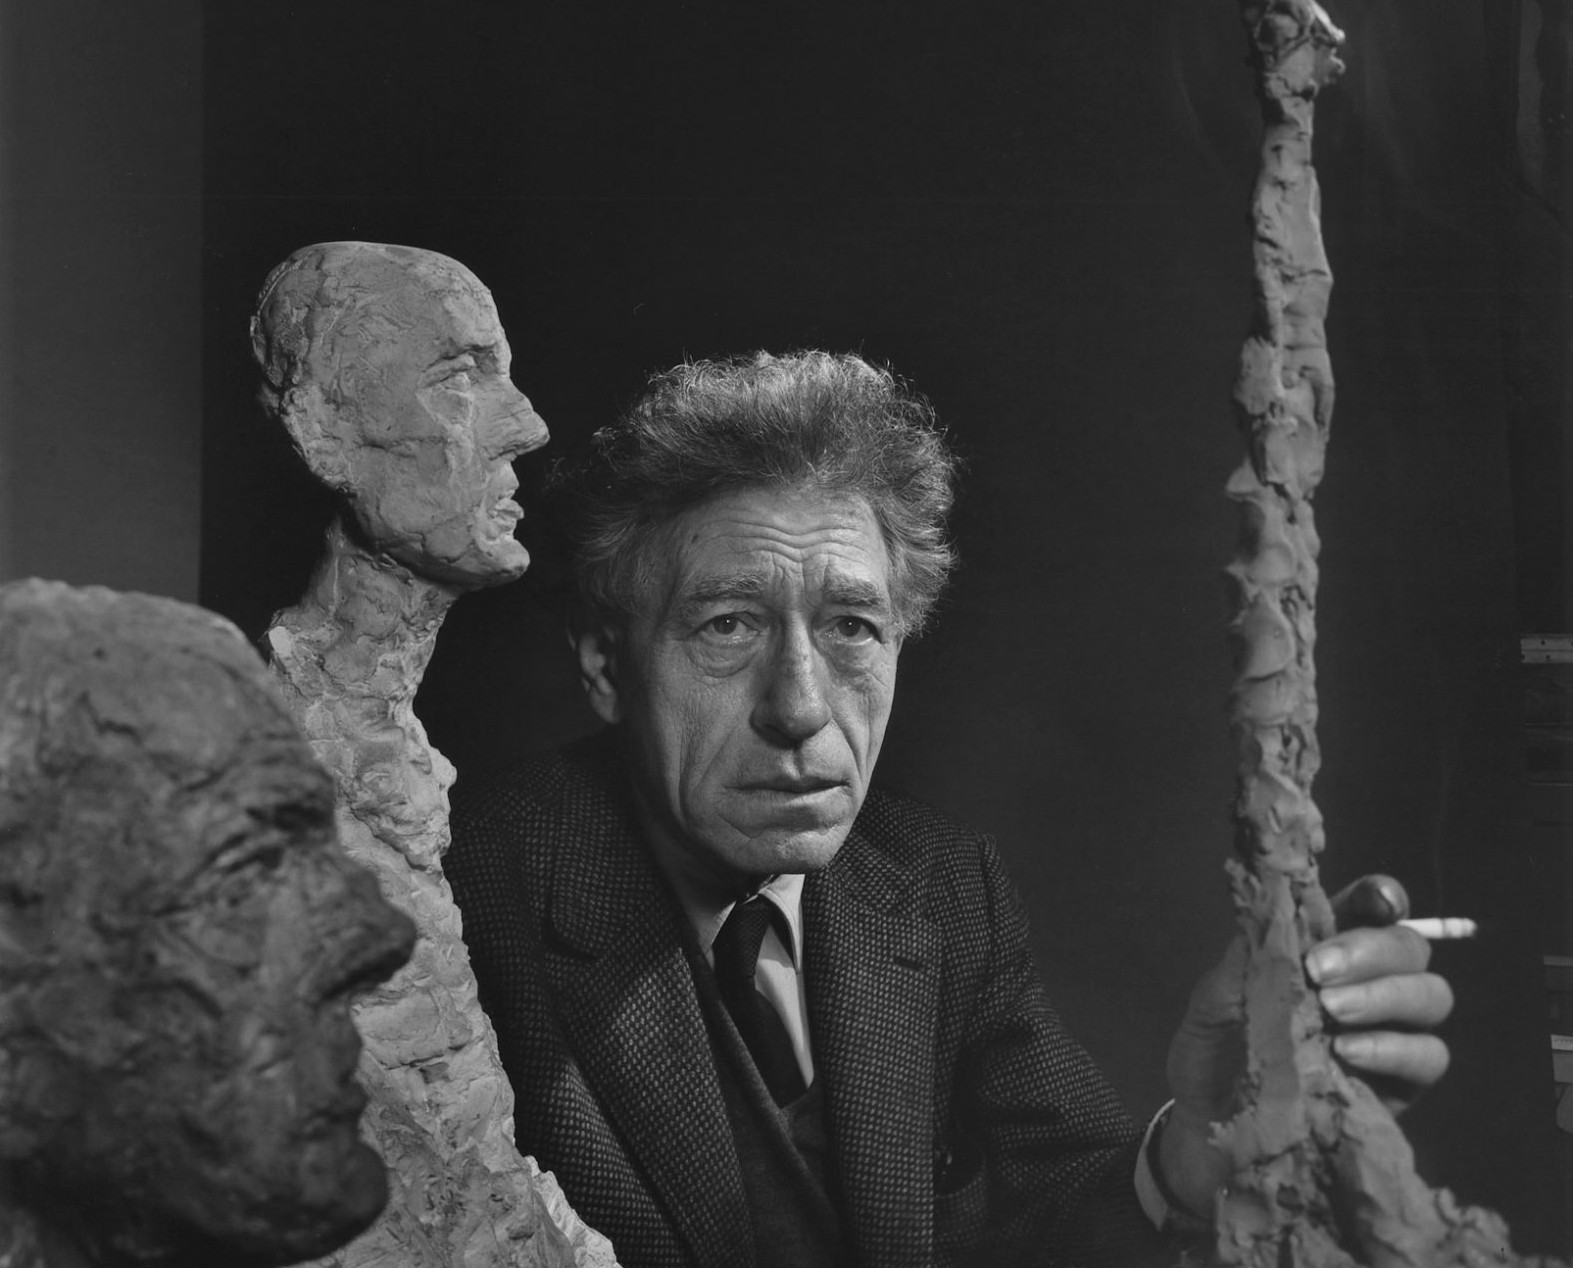 Eric Gibson & James Panero discuss the work of Alberto Giacometti